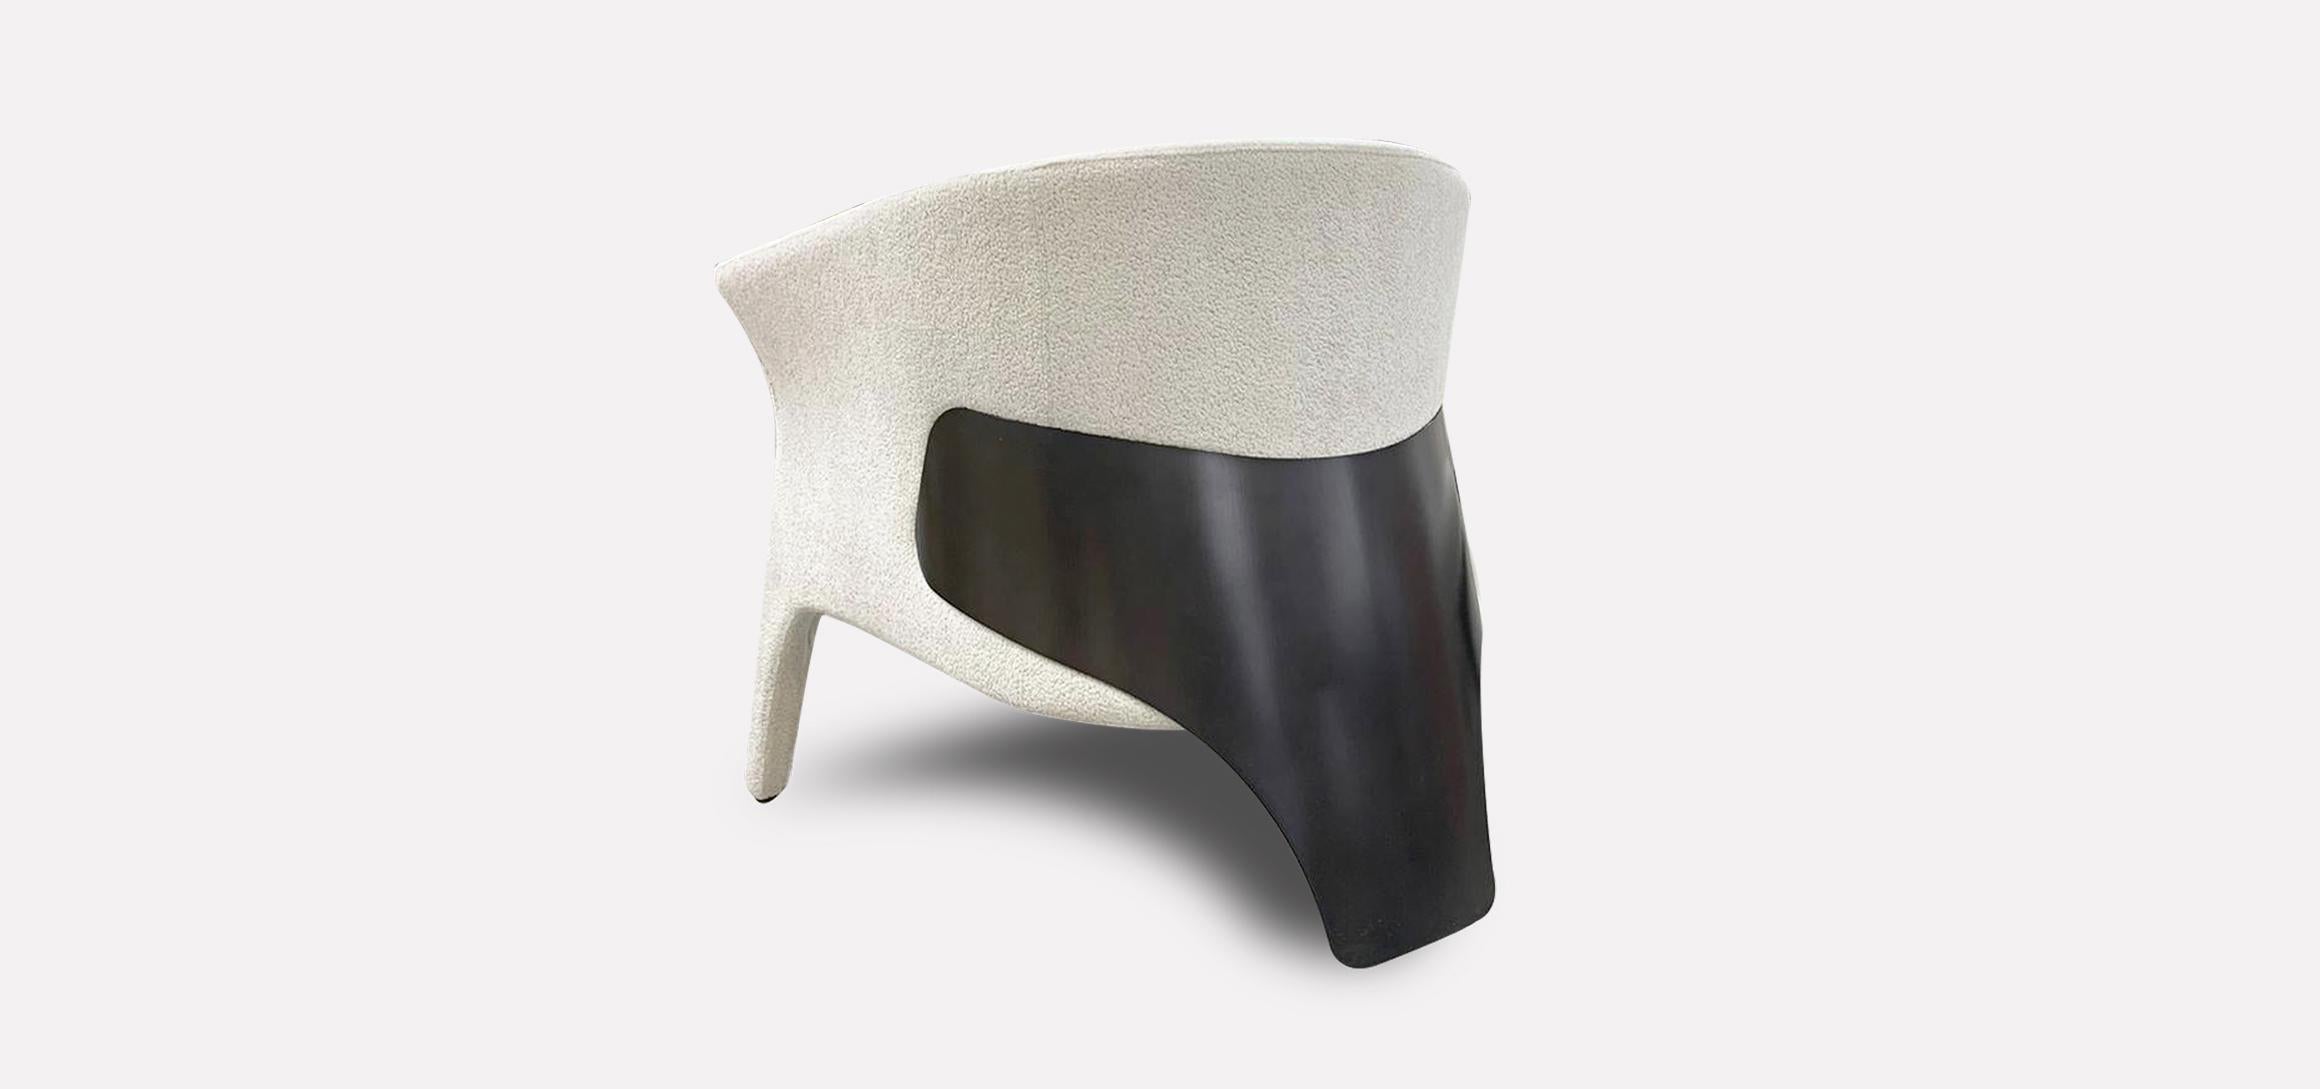 Der Sessel Mille ist ein dreibeiniger Sessel, der die Weichheit und Wärme der mehrschichtigen Schaumstoffpolsterung mit der Stabilität und Noblesse von Metall verbindet. Eine leicht geneigte, üppige Sitzschale sorgt für den richtigen Komfort,